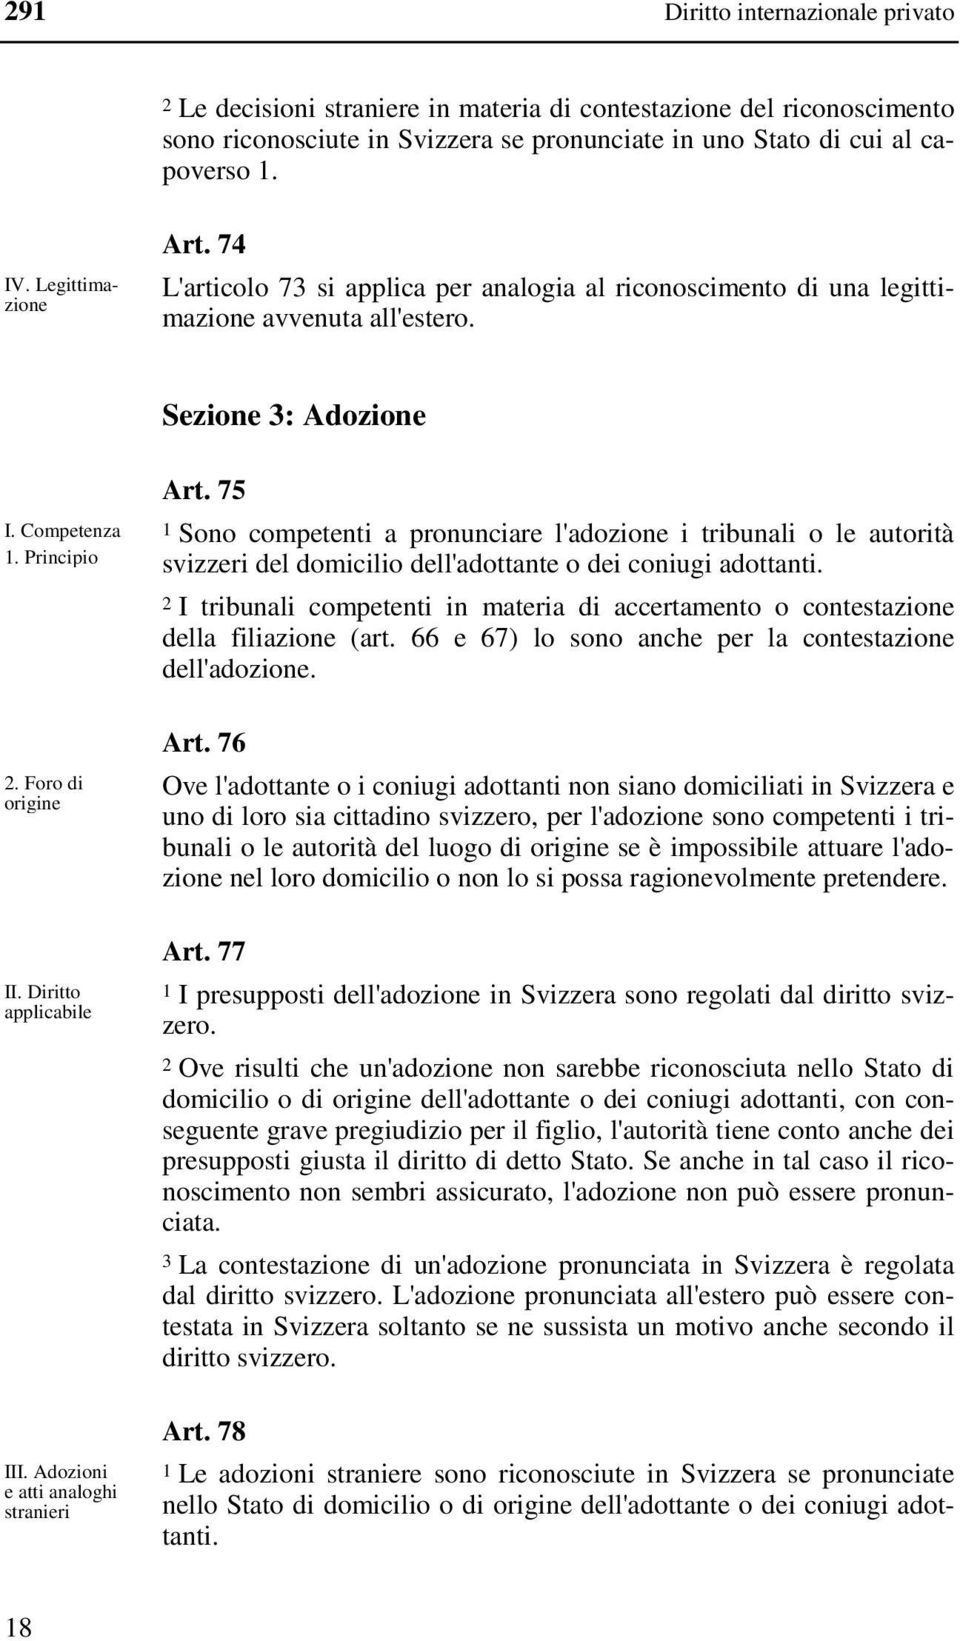 Diritto applicabile III. Adozioni e atti analoghi stranieri Art. 75 1 Sono competenti a pronunciare l'adozione i tribunali o le autorità svizzeri del domicilio dell'adottante o dei coniugi adottanti.